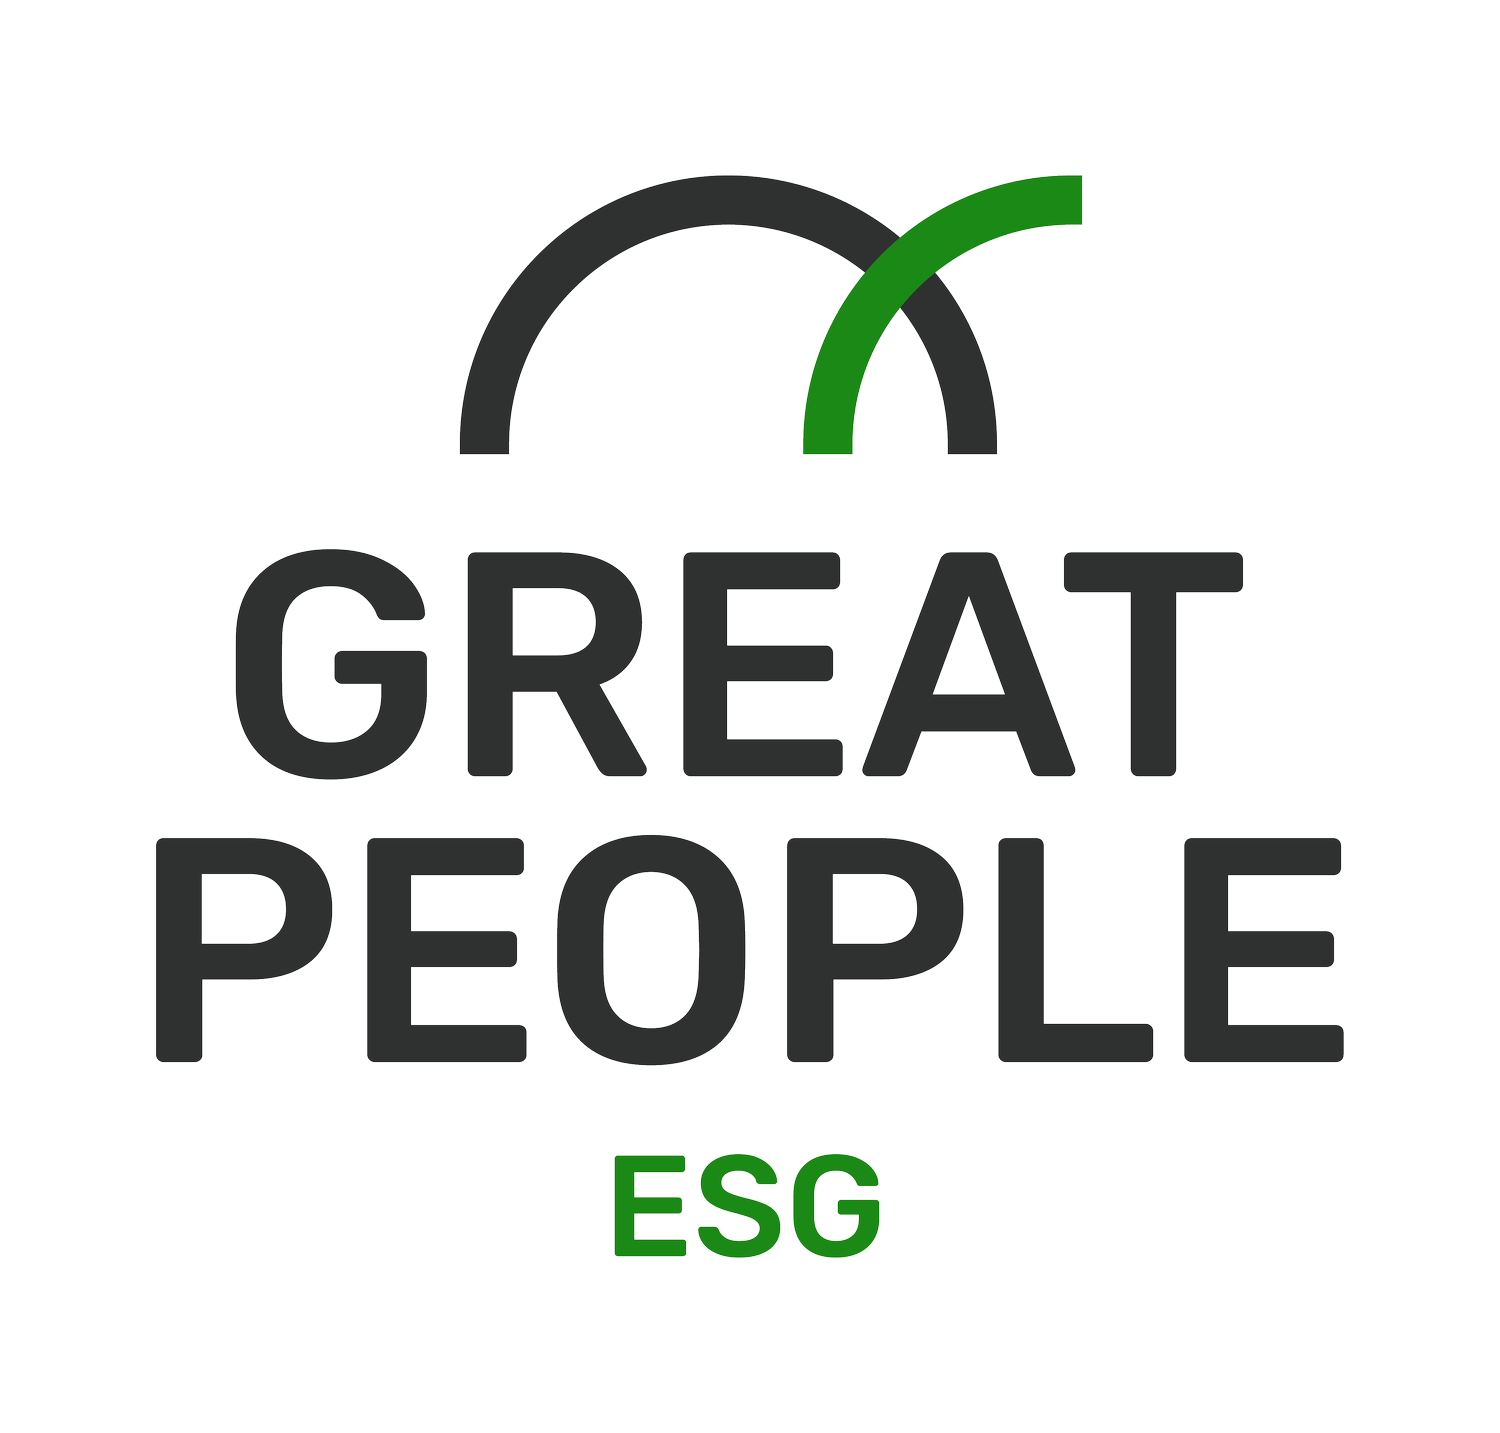 Great People ESG